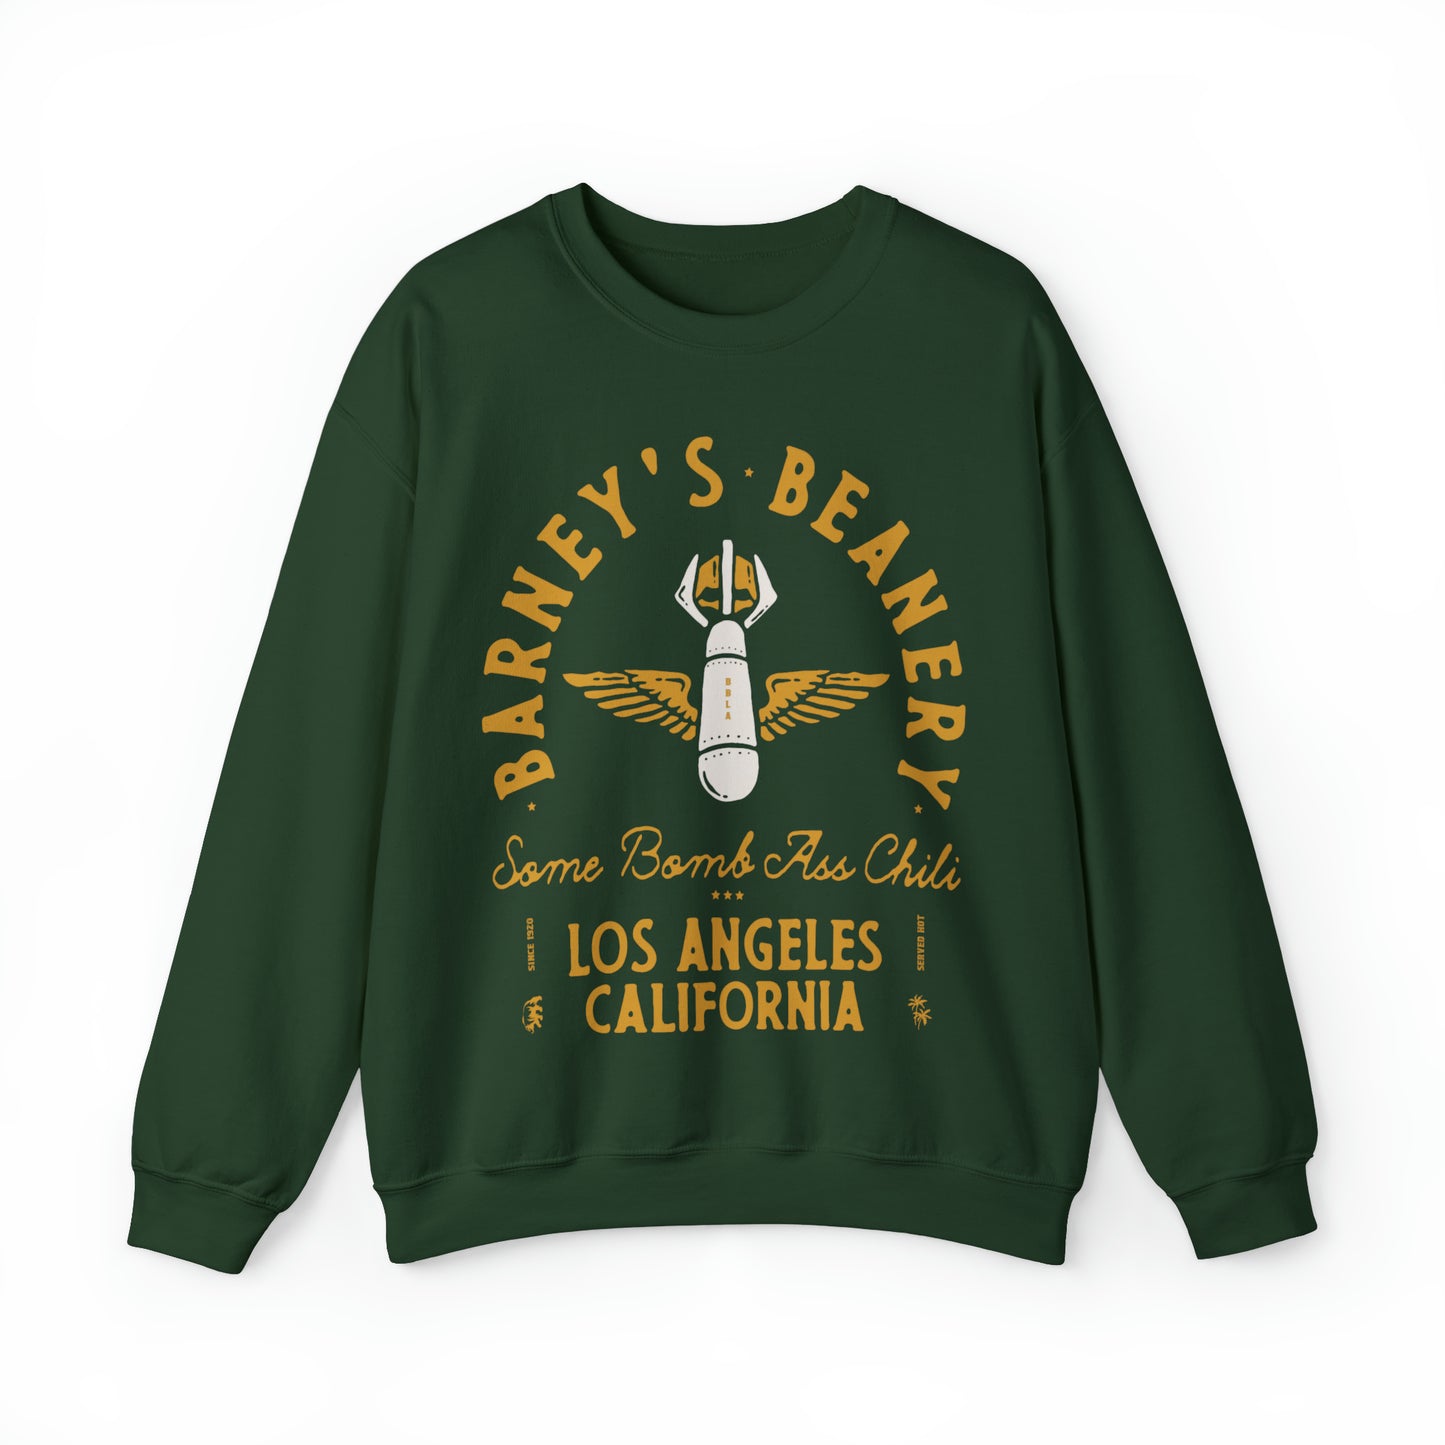 Some Bomb Ass Chili | BARNEY'S BEANERY - Women's Graphic Sweatshirt